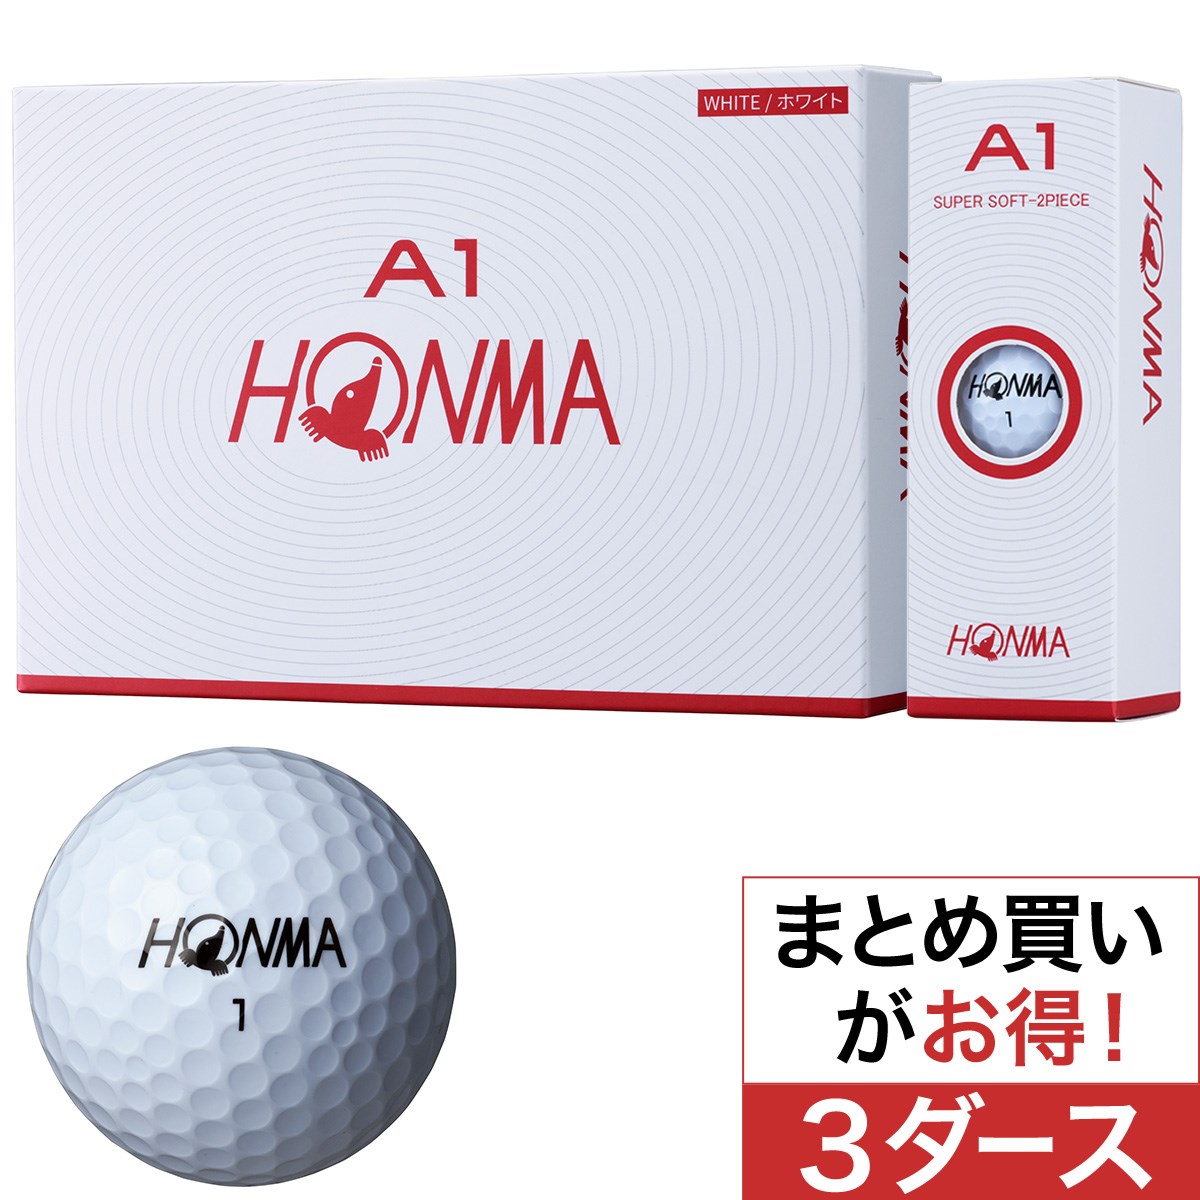 本間ゴルフ(HONMA GOLF) A1 ボール 3ダースセット 